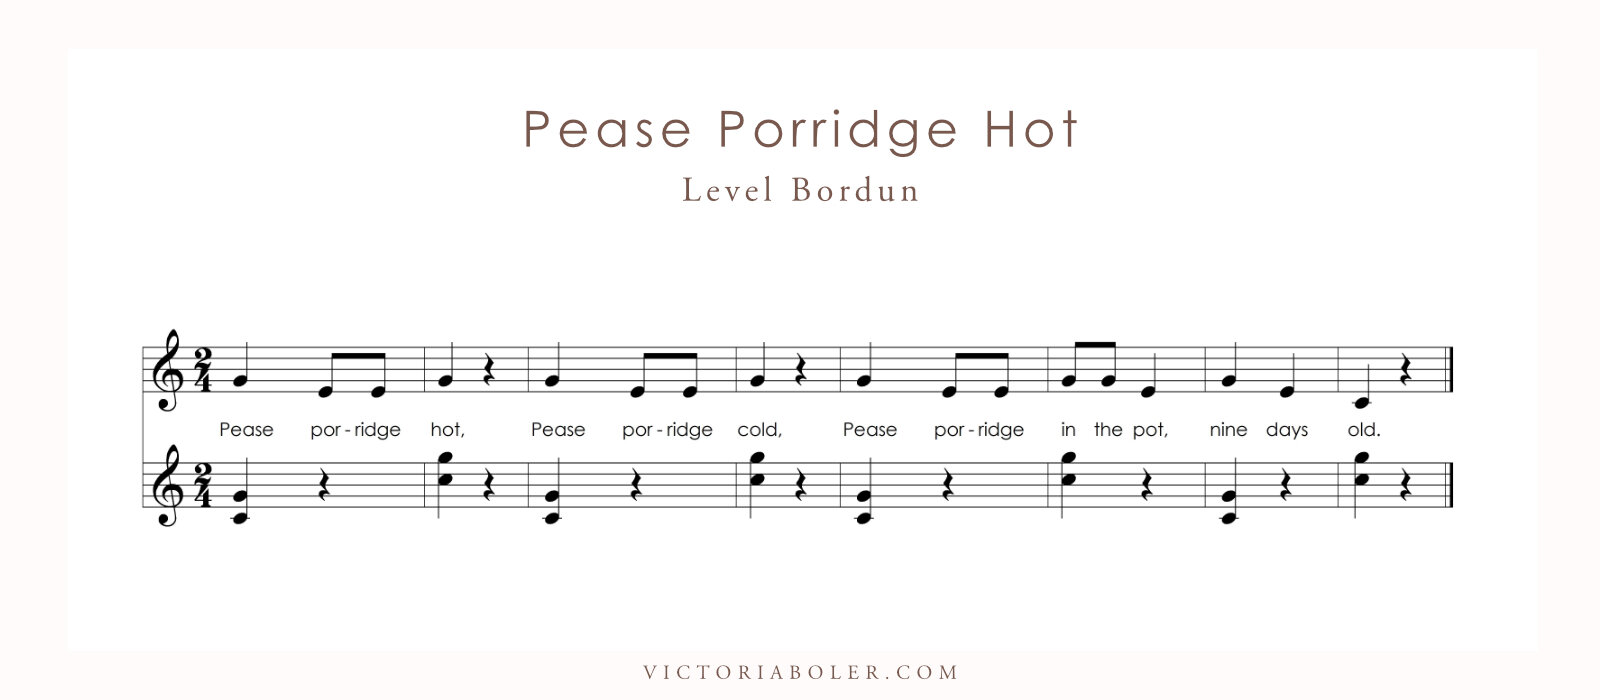 Pease Porridge Hot Level Bordun